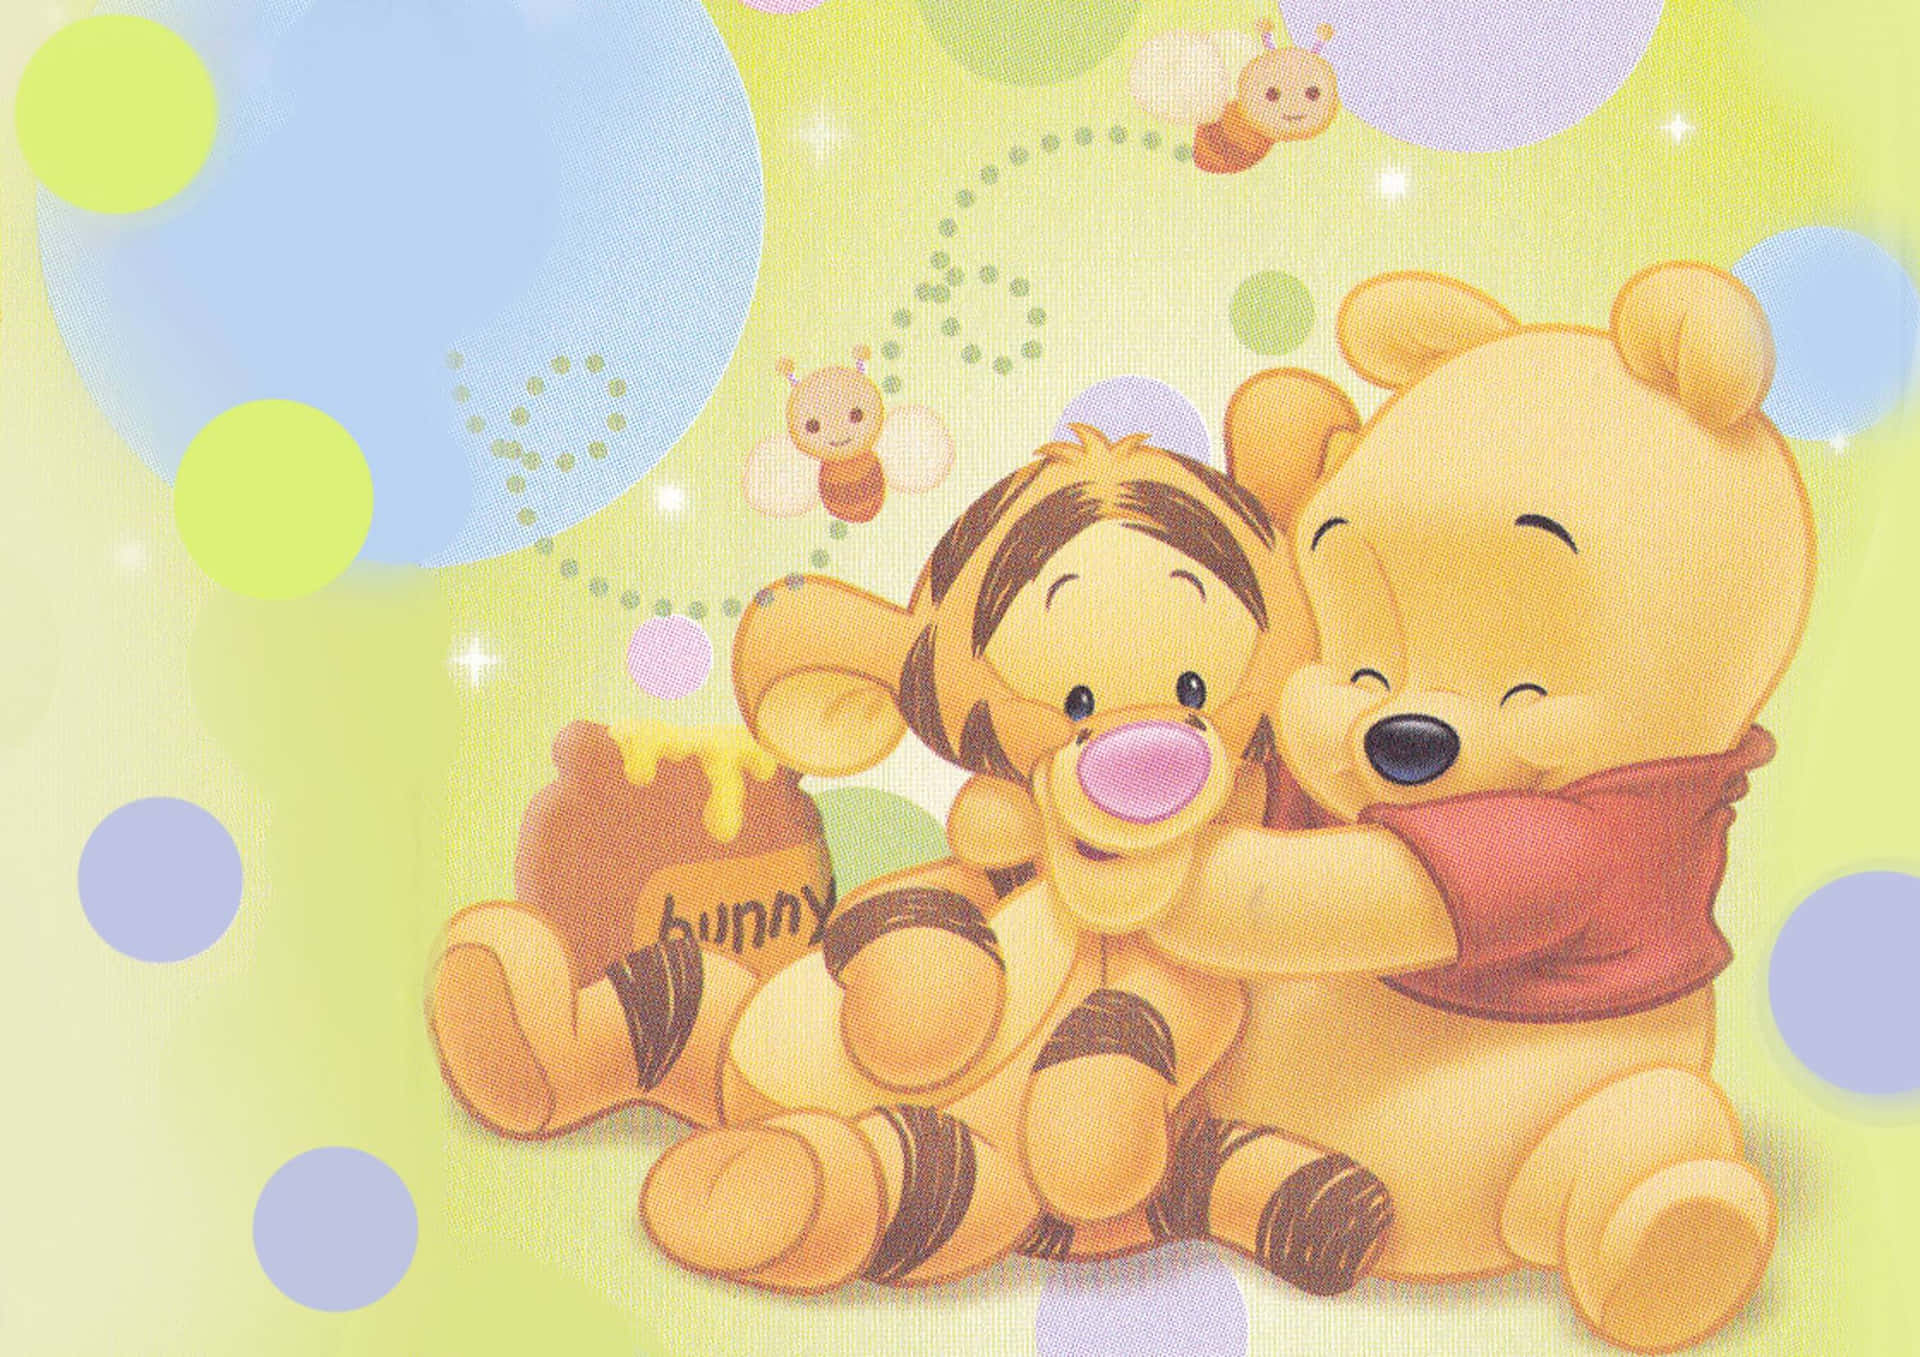 Winniethe Pooh Disfrutando De Los Momentos De Paz De La Vida. Fondo de pantalla